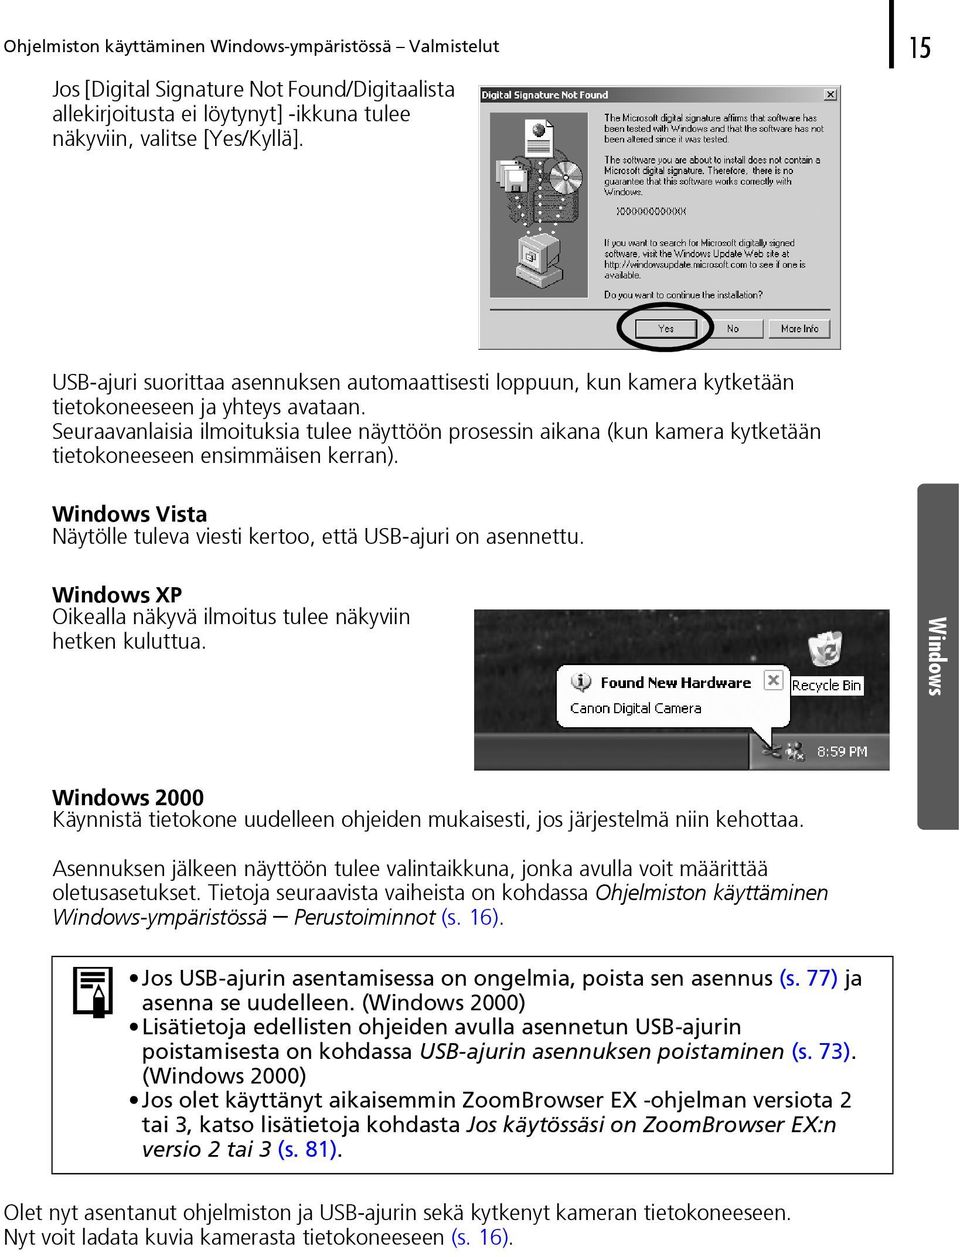 Seuraavanlaisia ilmoituksia tulee näyttöön prosessin aikana (kun kamera kytketään tietokoneeseen ensimmäisen kerran). Windows Vista Näytölle tuleva viesti kertoo, että USB-ajuri on asennettu.